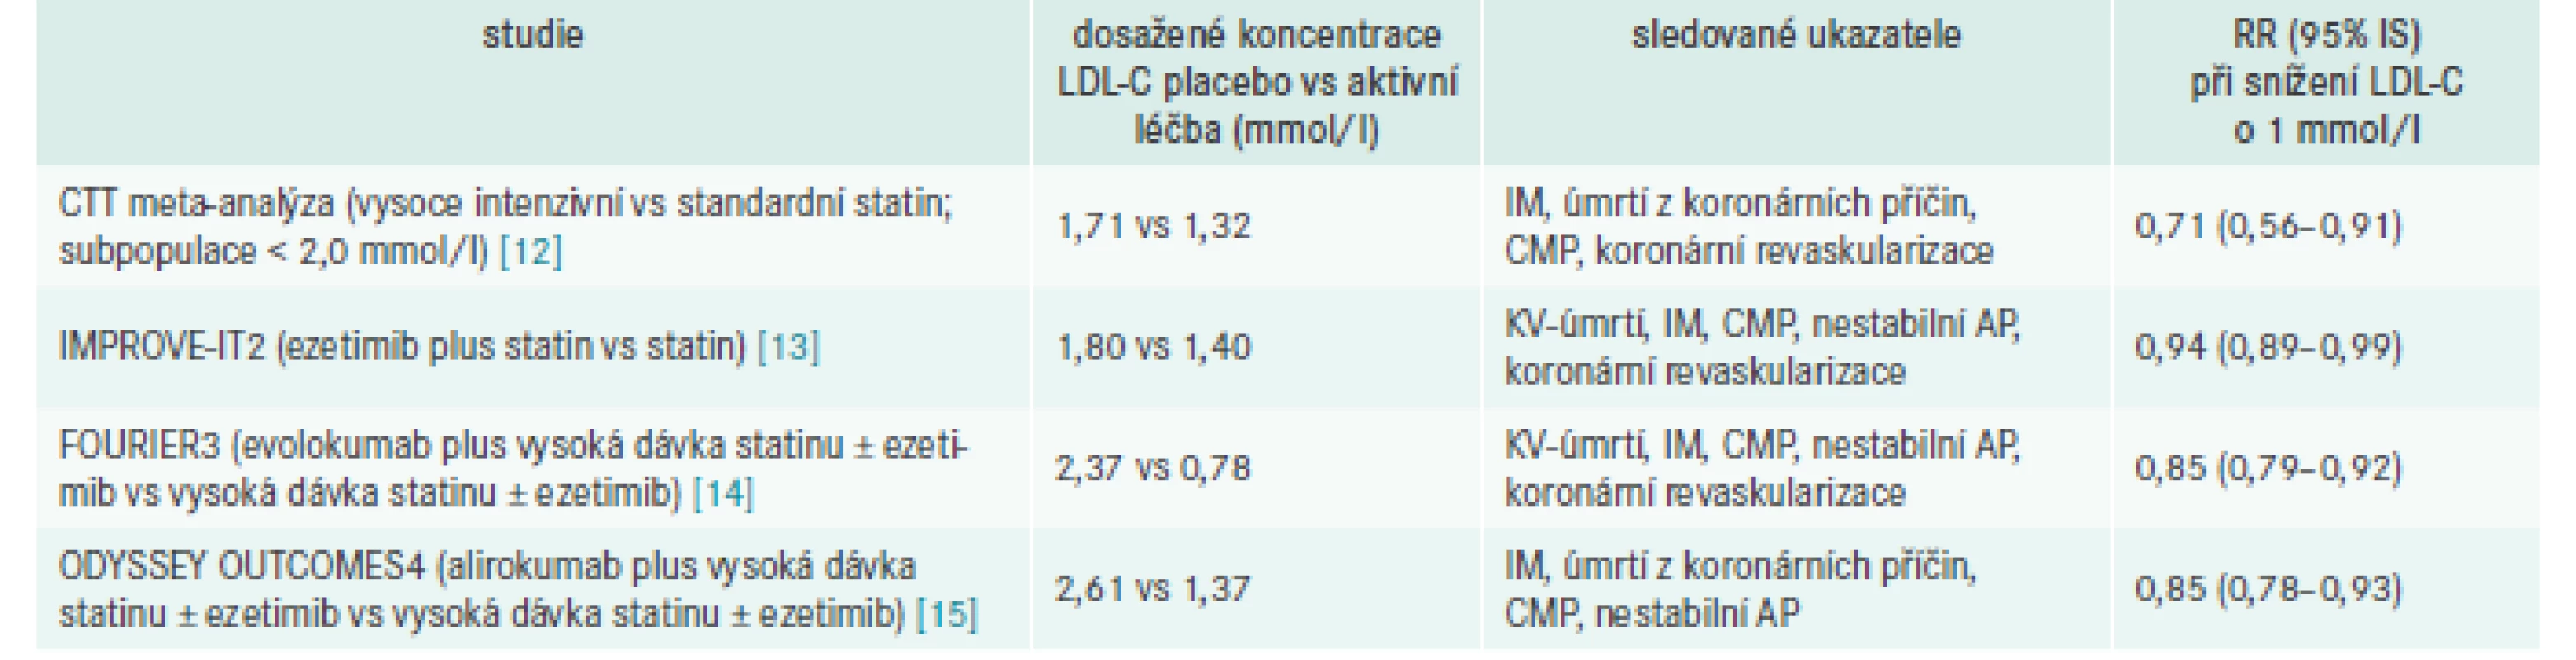 Přehled hlavních důkazů pro snížení cílové hodnoty LDL-C na 1,4 mmol/l v kategorii
velmi vysokého KV-rizika